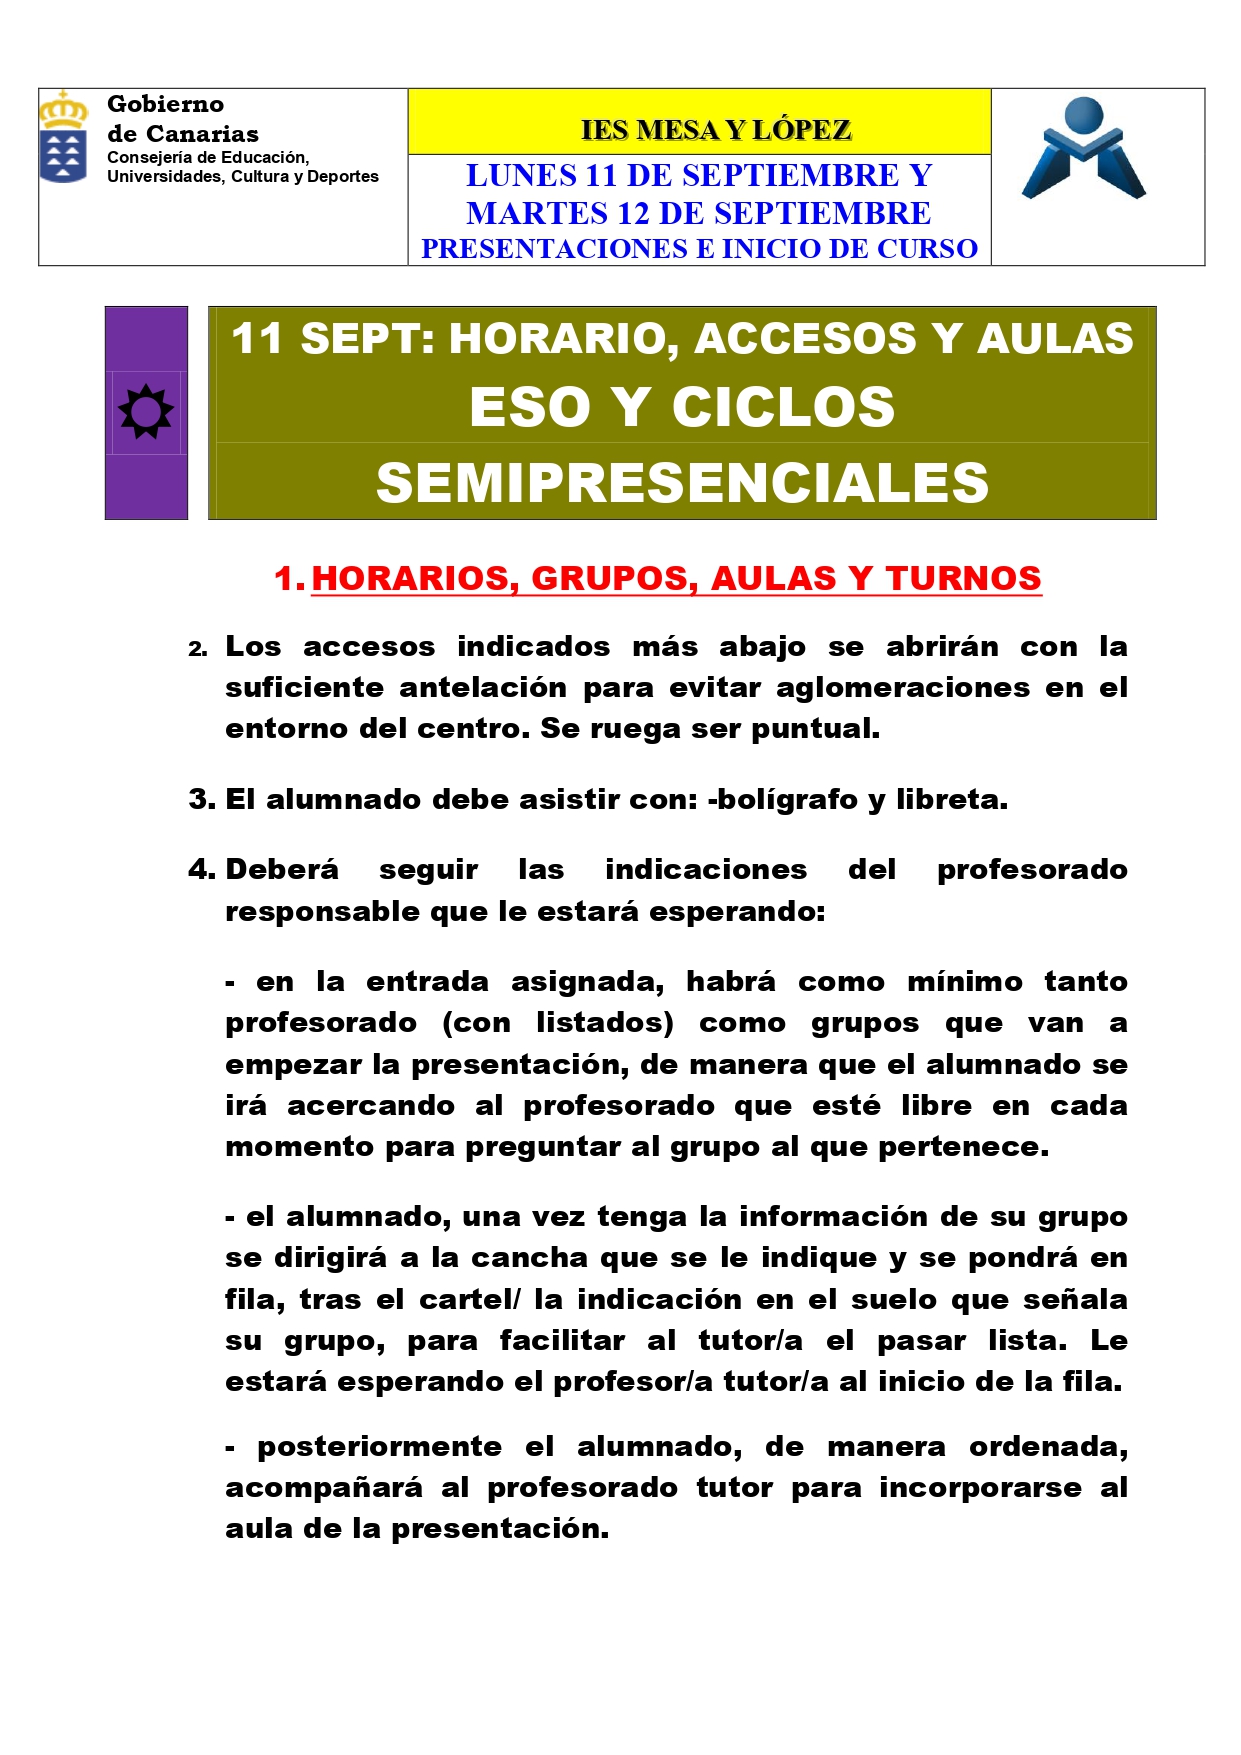 PRESENTACIONES E INICIO DE CLASES 12 SEPTIEMBRE page 0001